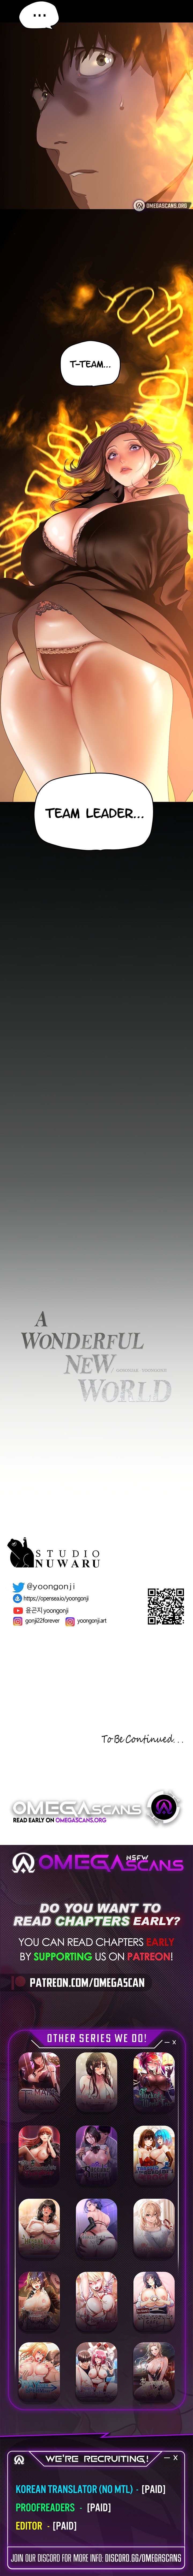 a-wonderful-new-world-chap-197-10